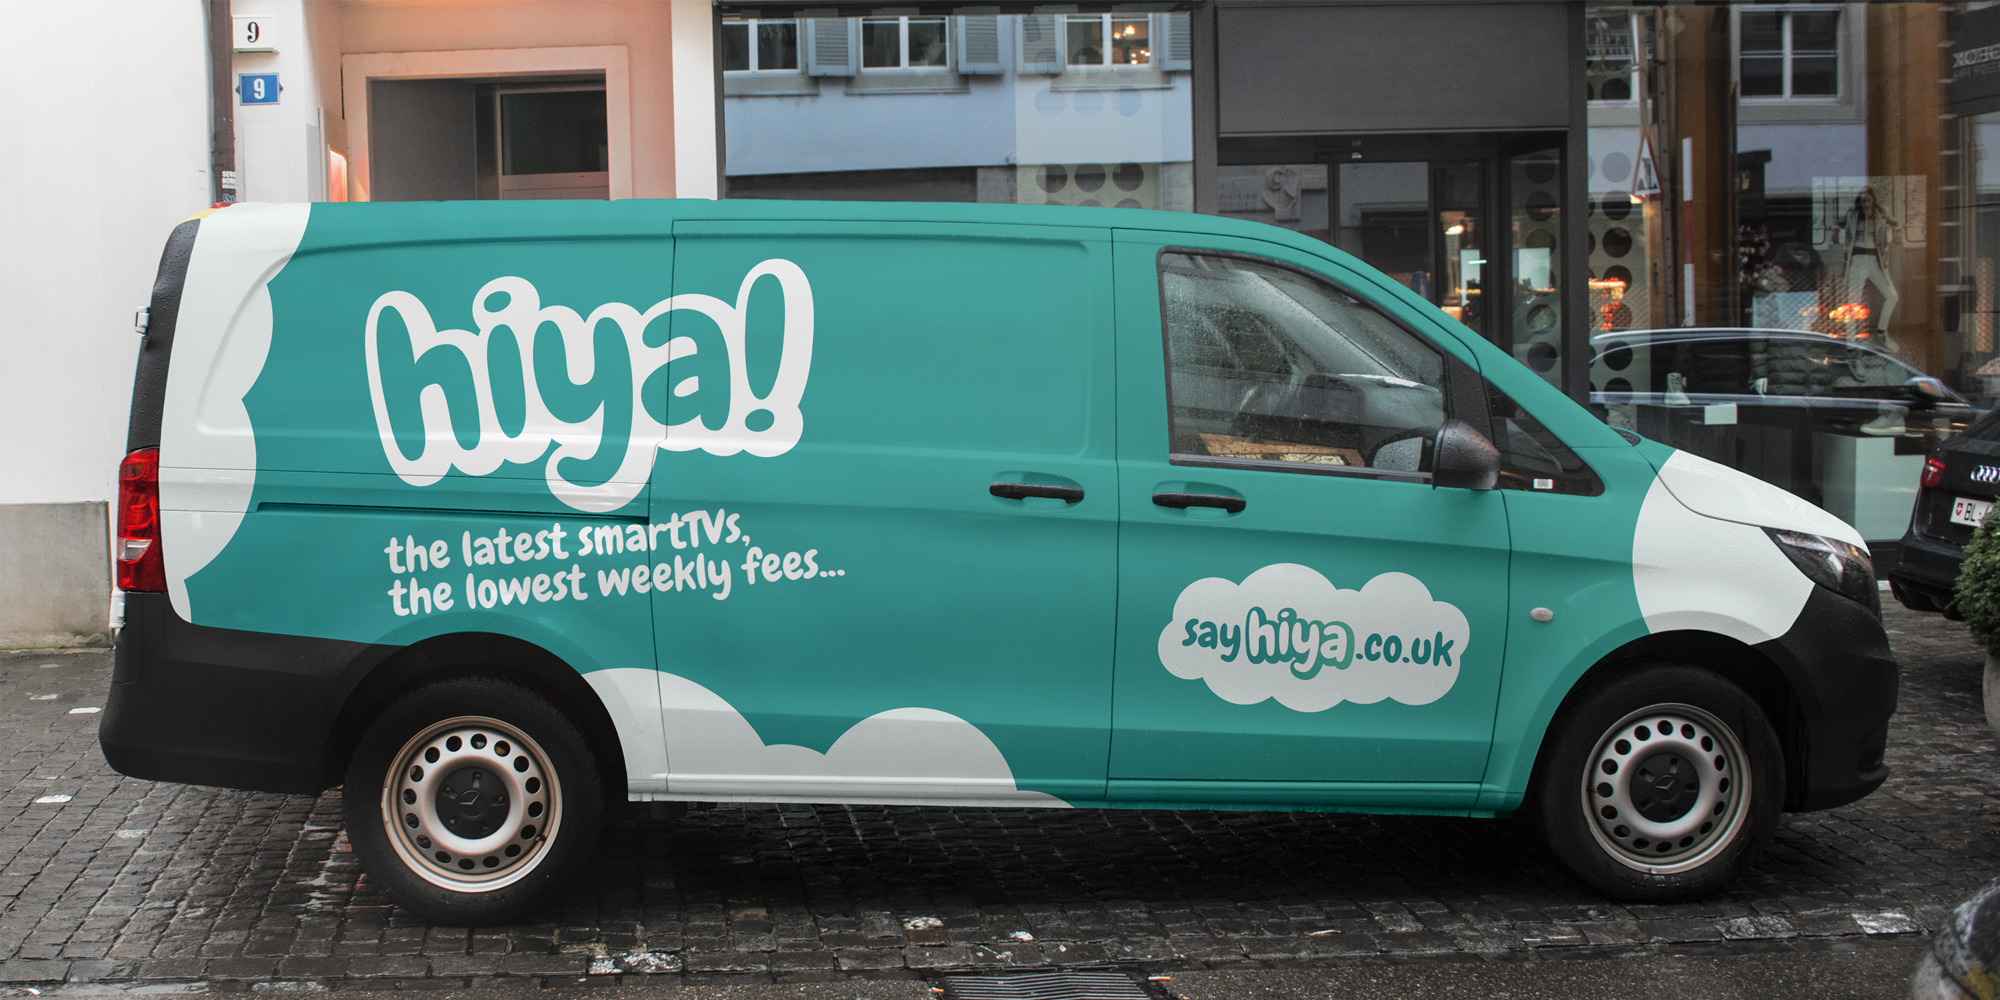 Hiya logo and branding on a van